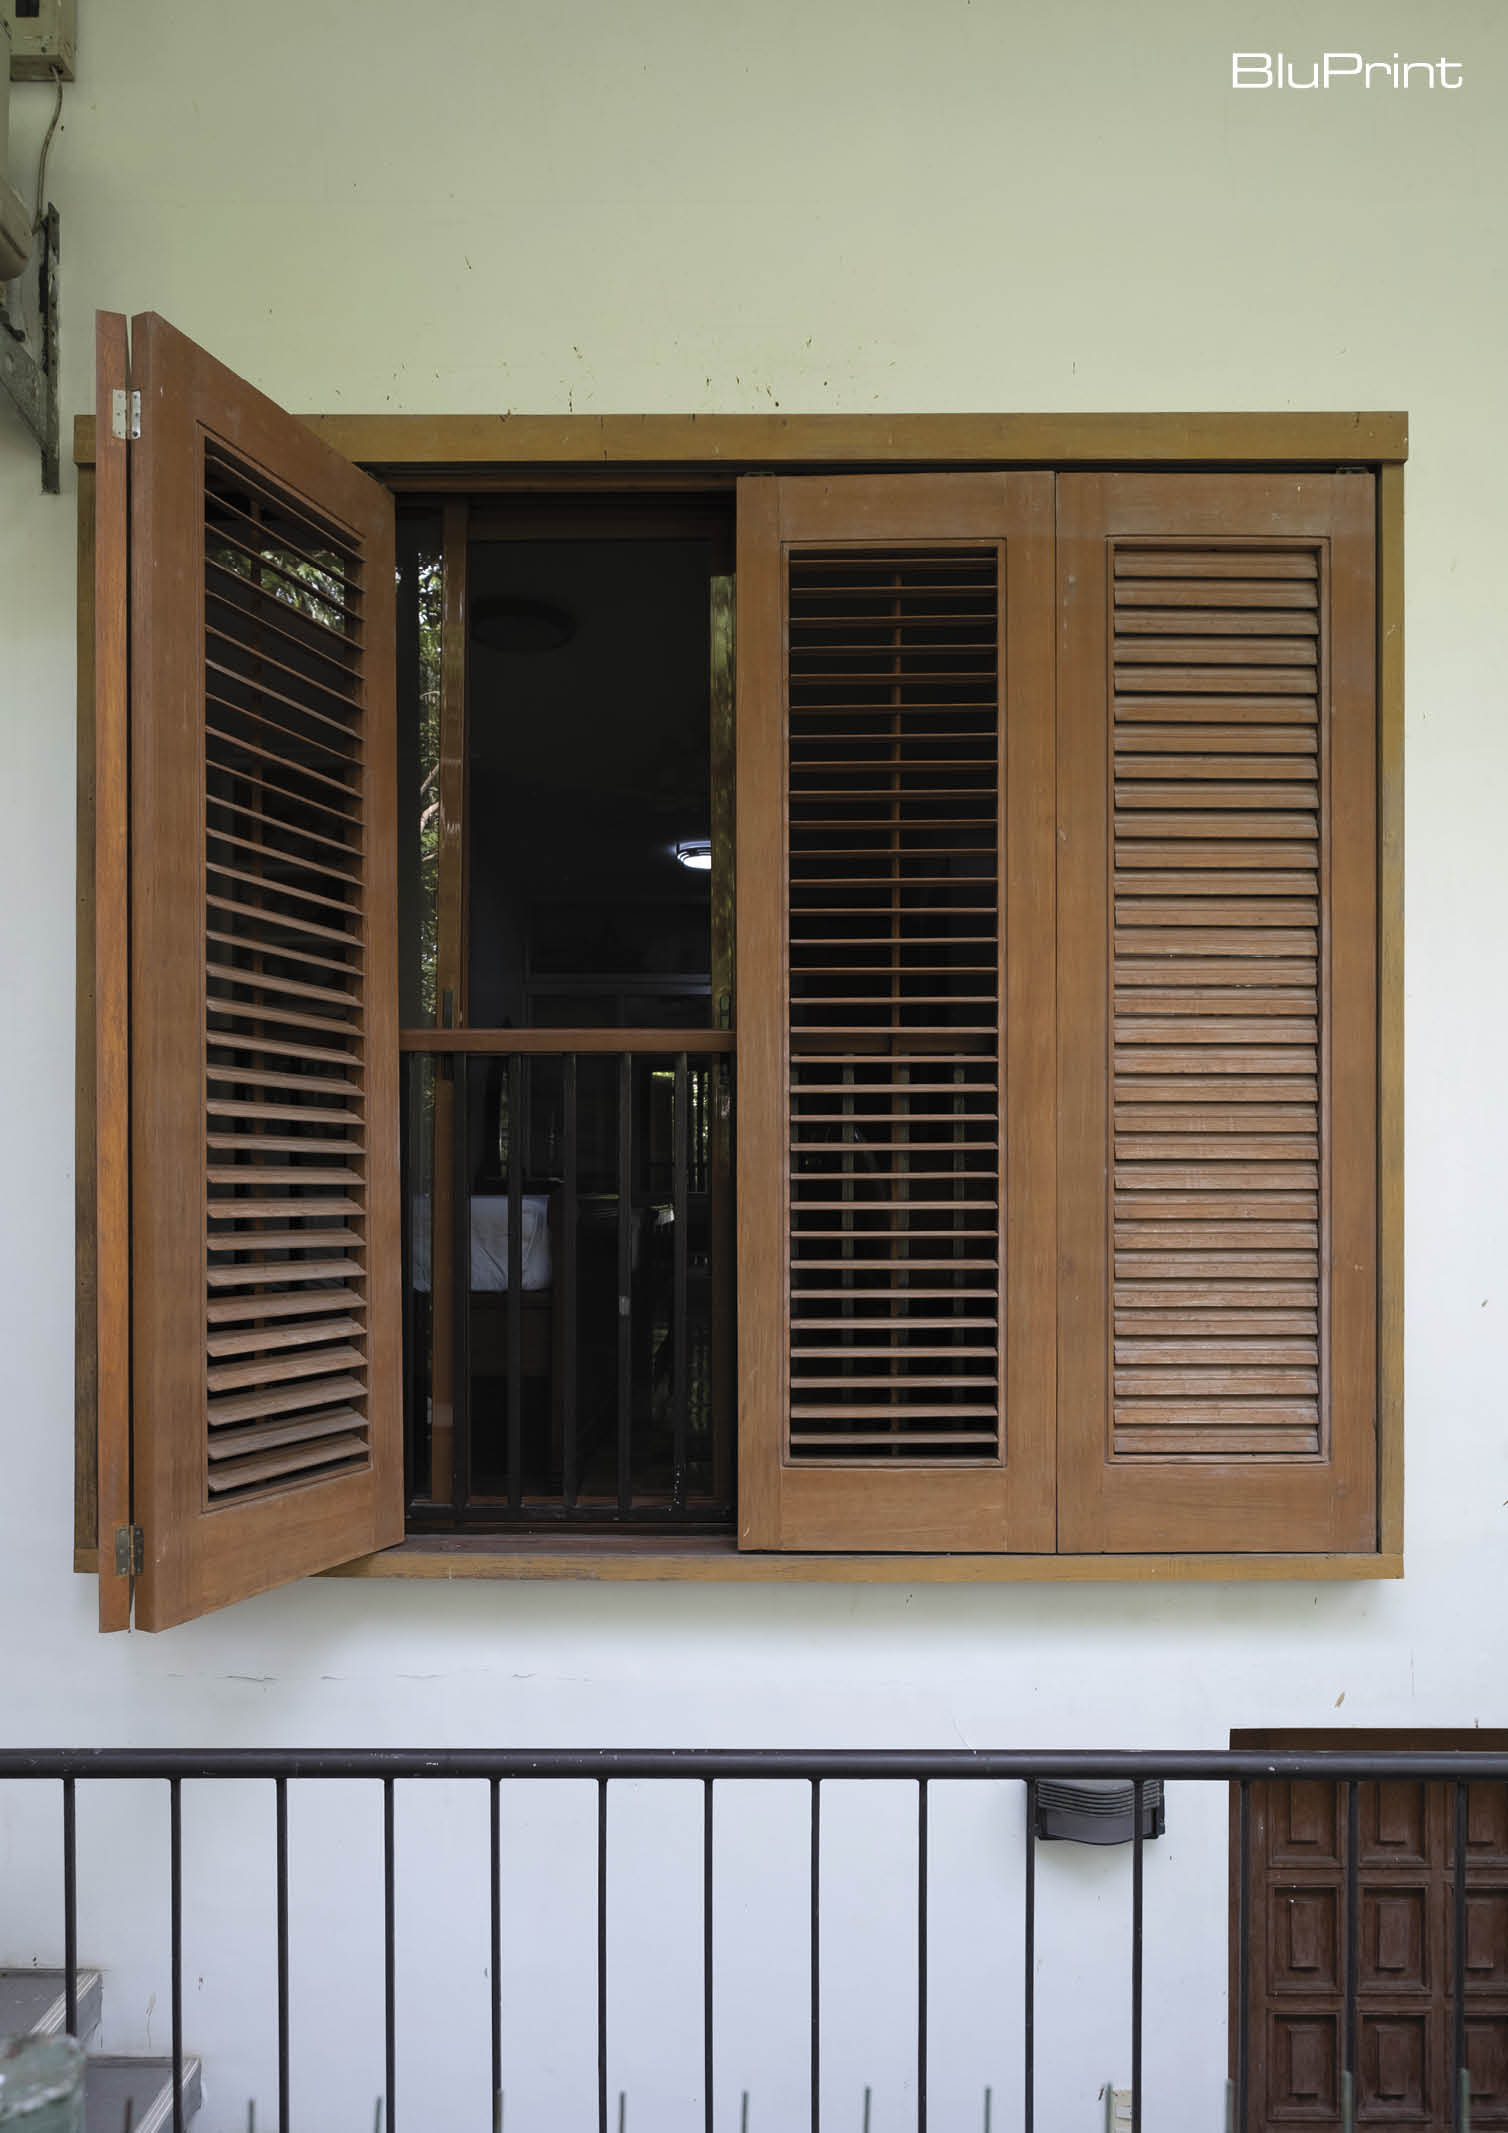 Slatted wooden window shutters